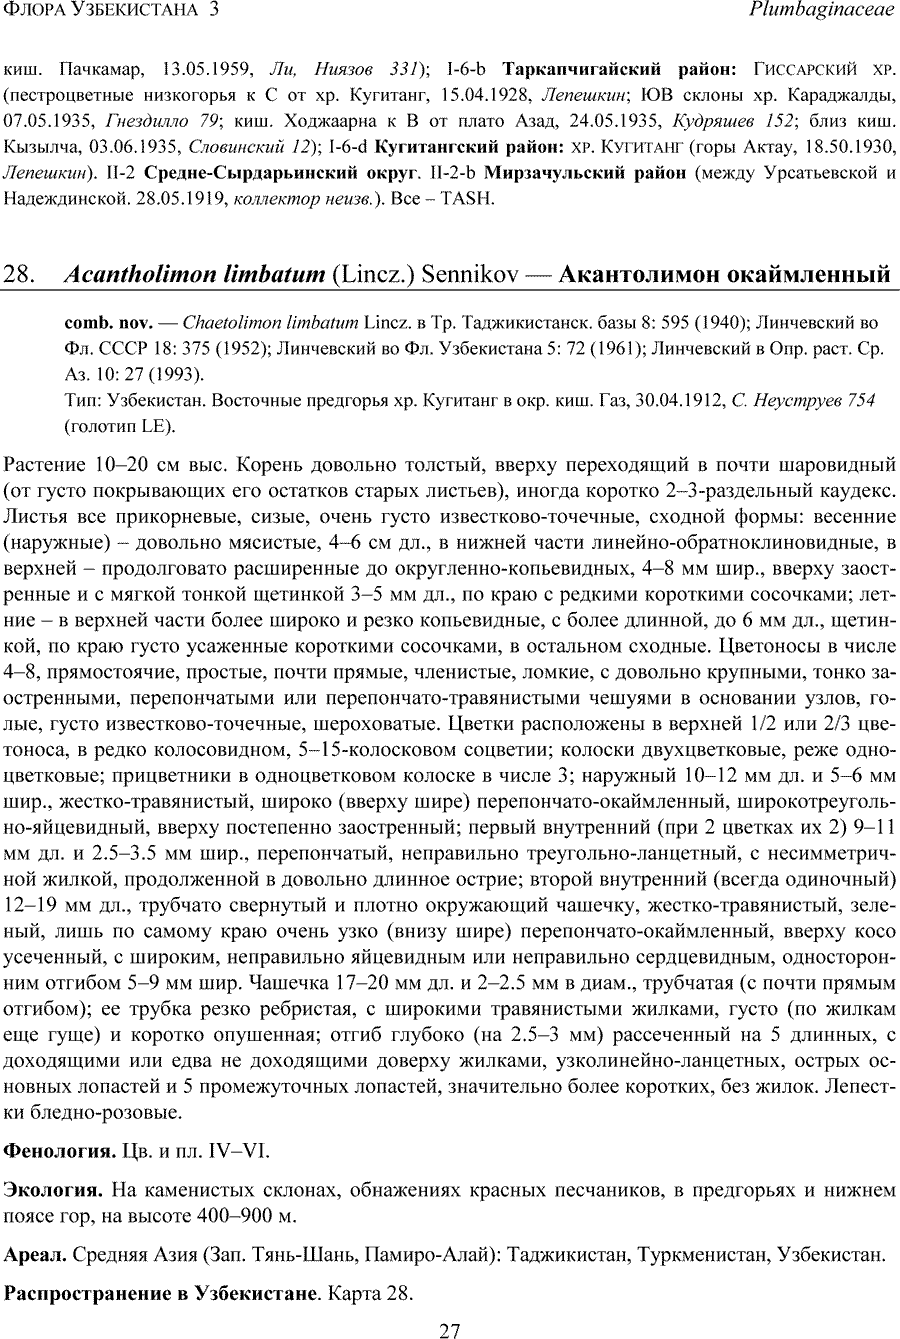 https://forum.plantarium.ru/misc.php?action=pun_attachment&amp;item=28440